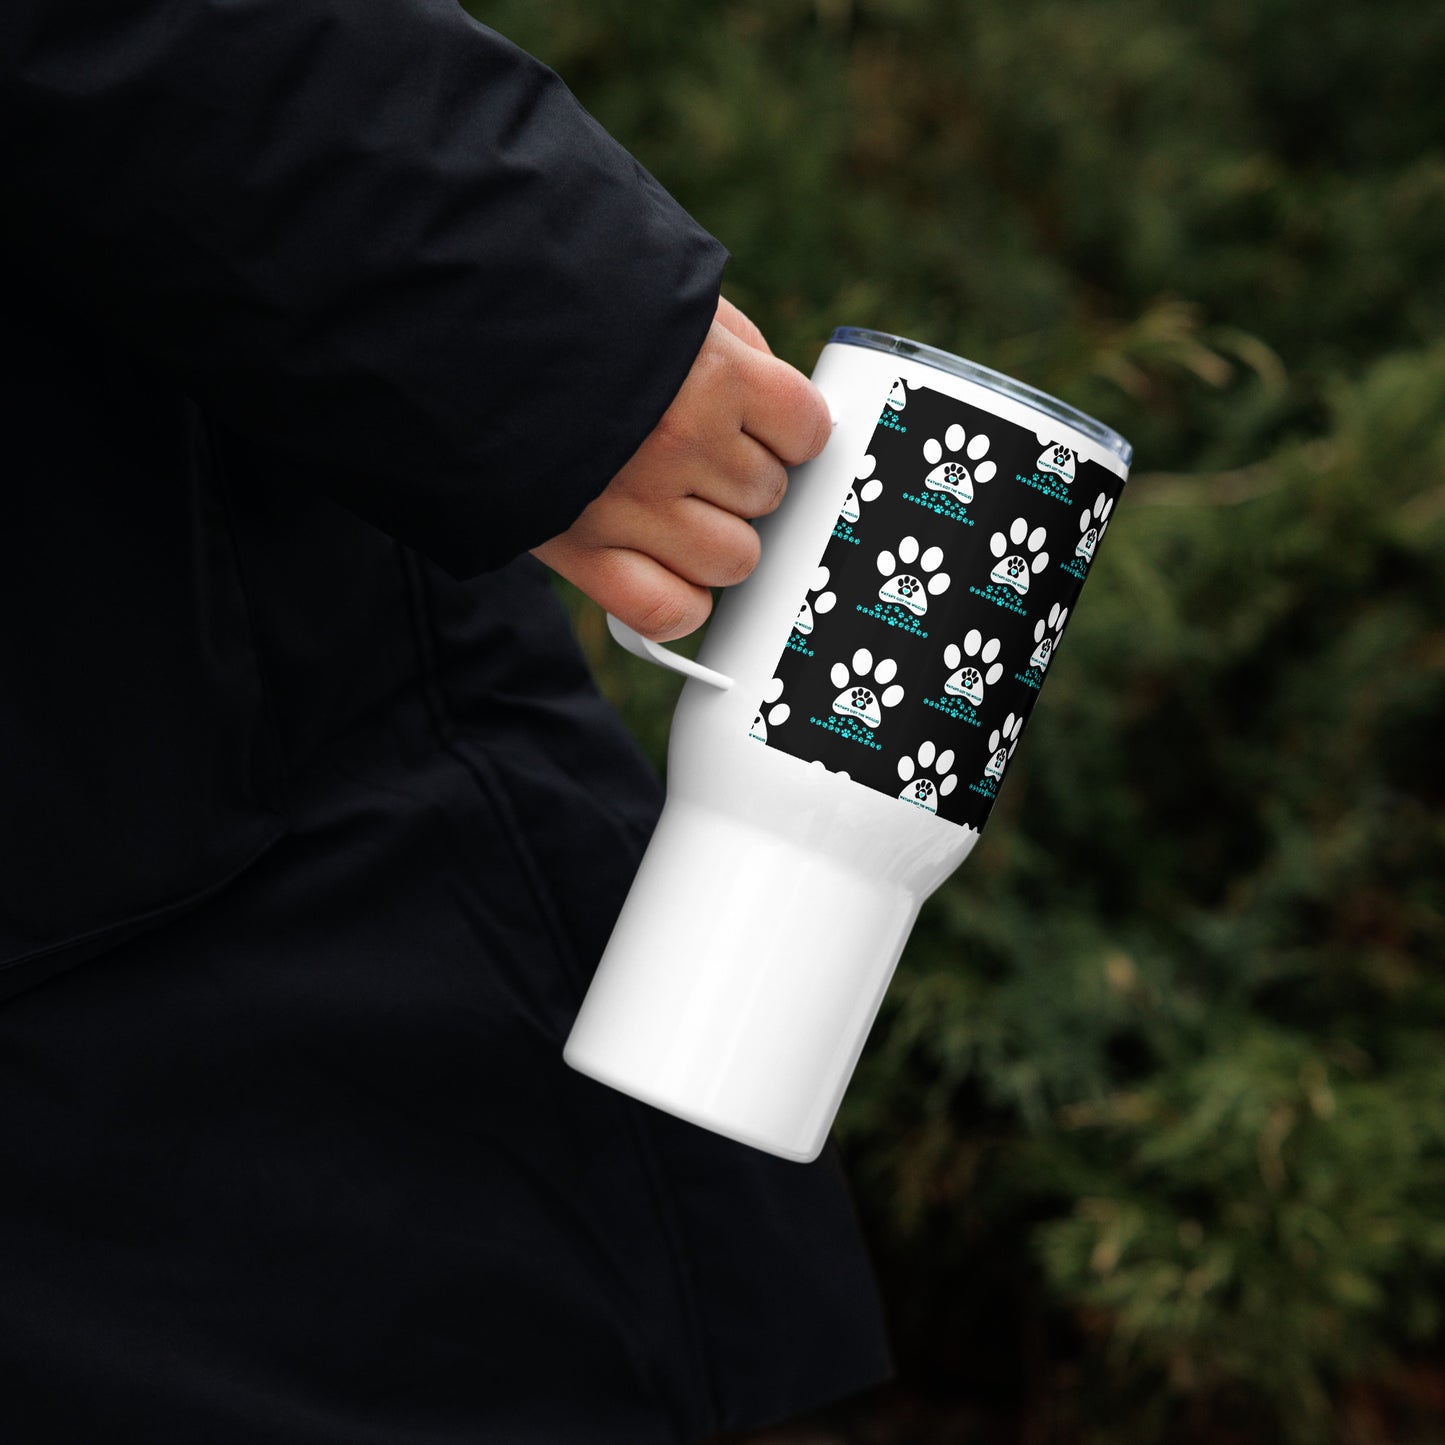 Paw Print- Travel mug with a handle